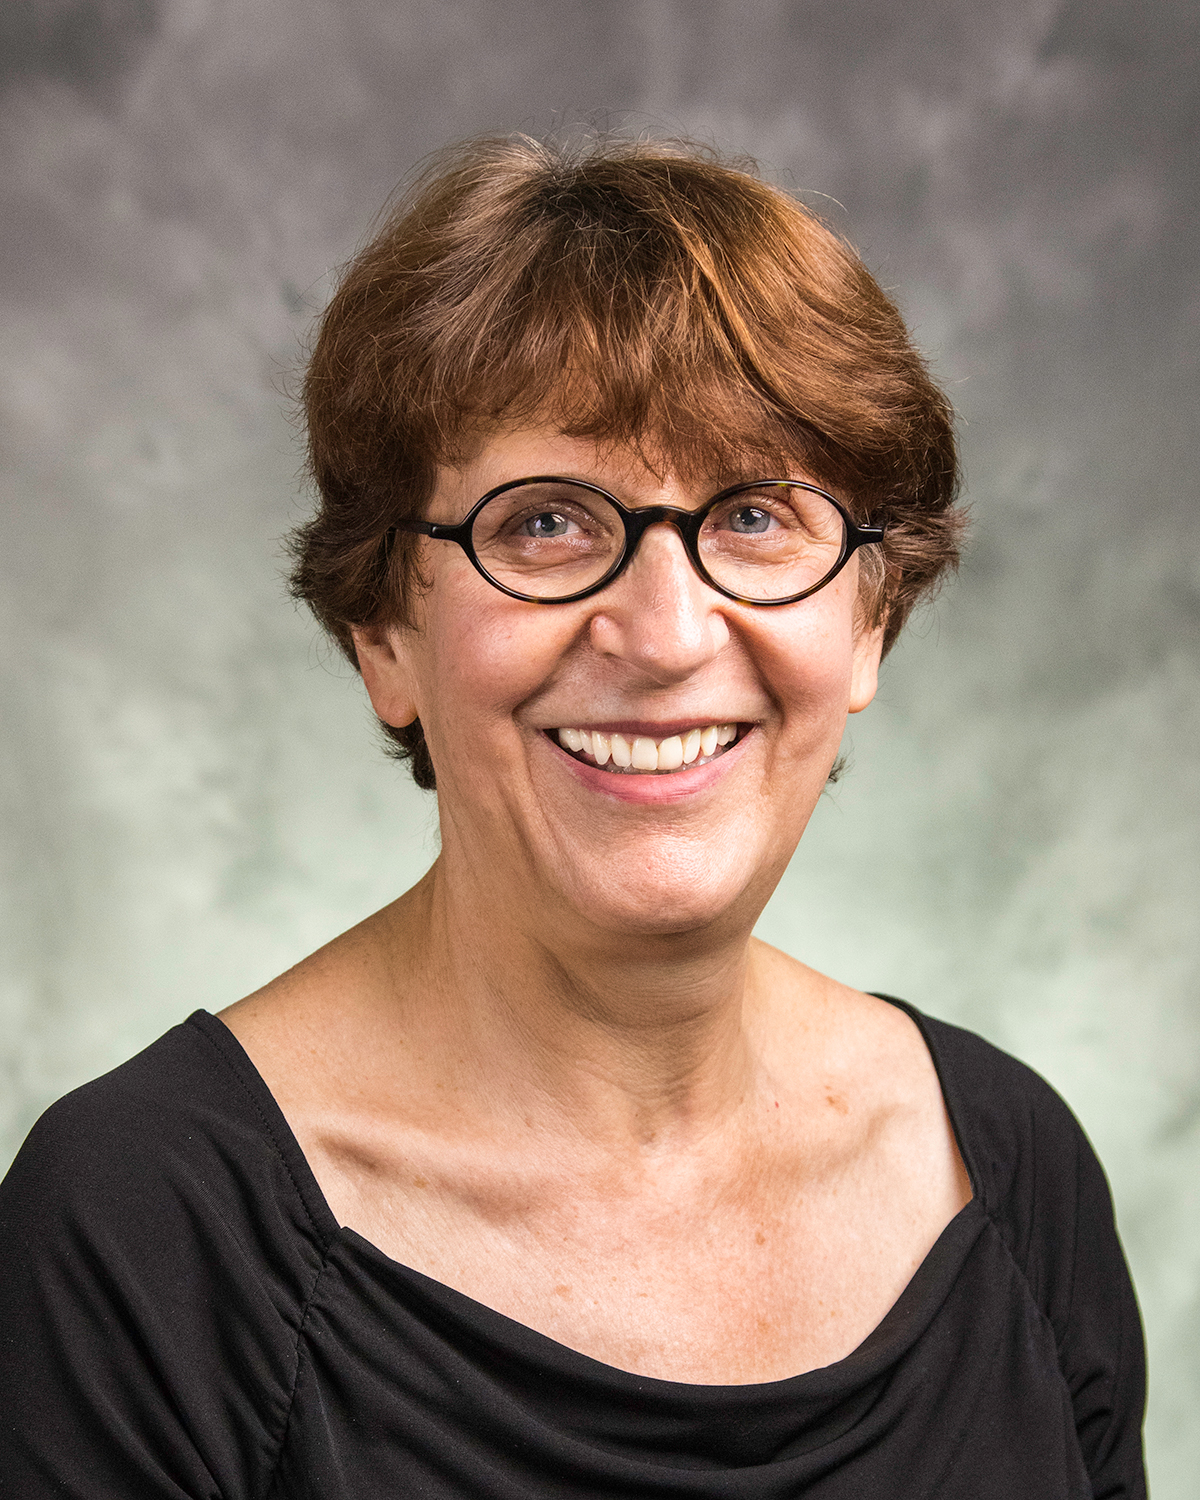 Professor Sarah Fishman